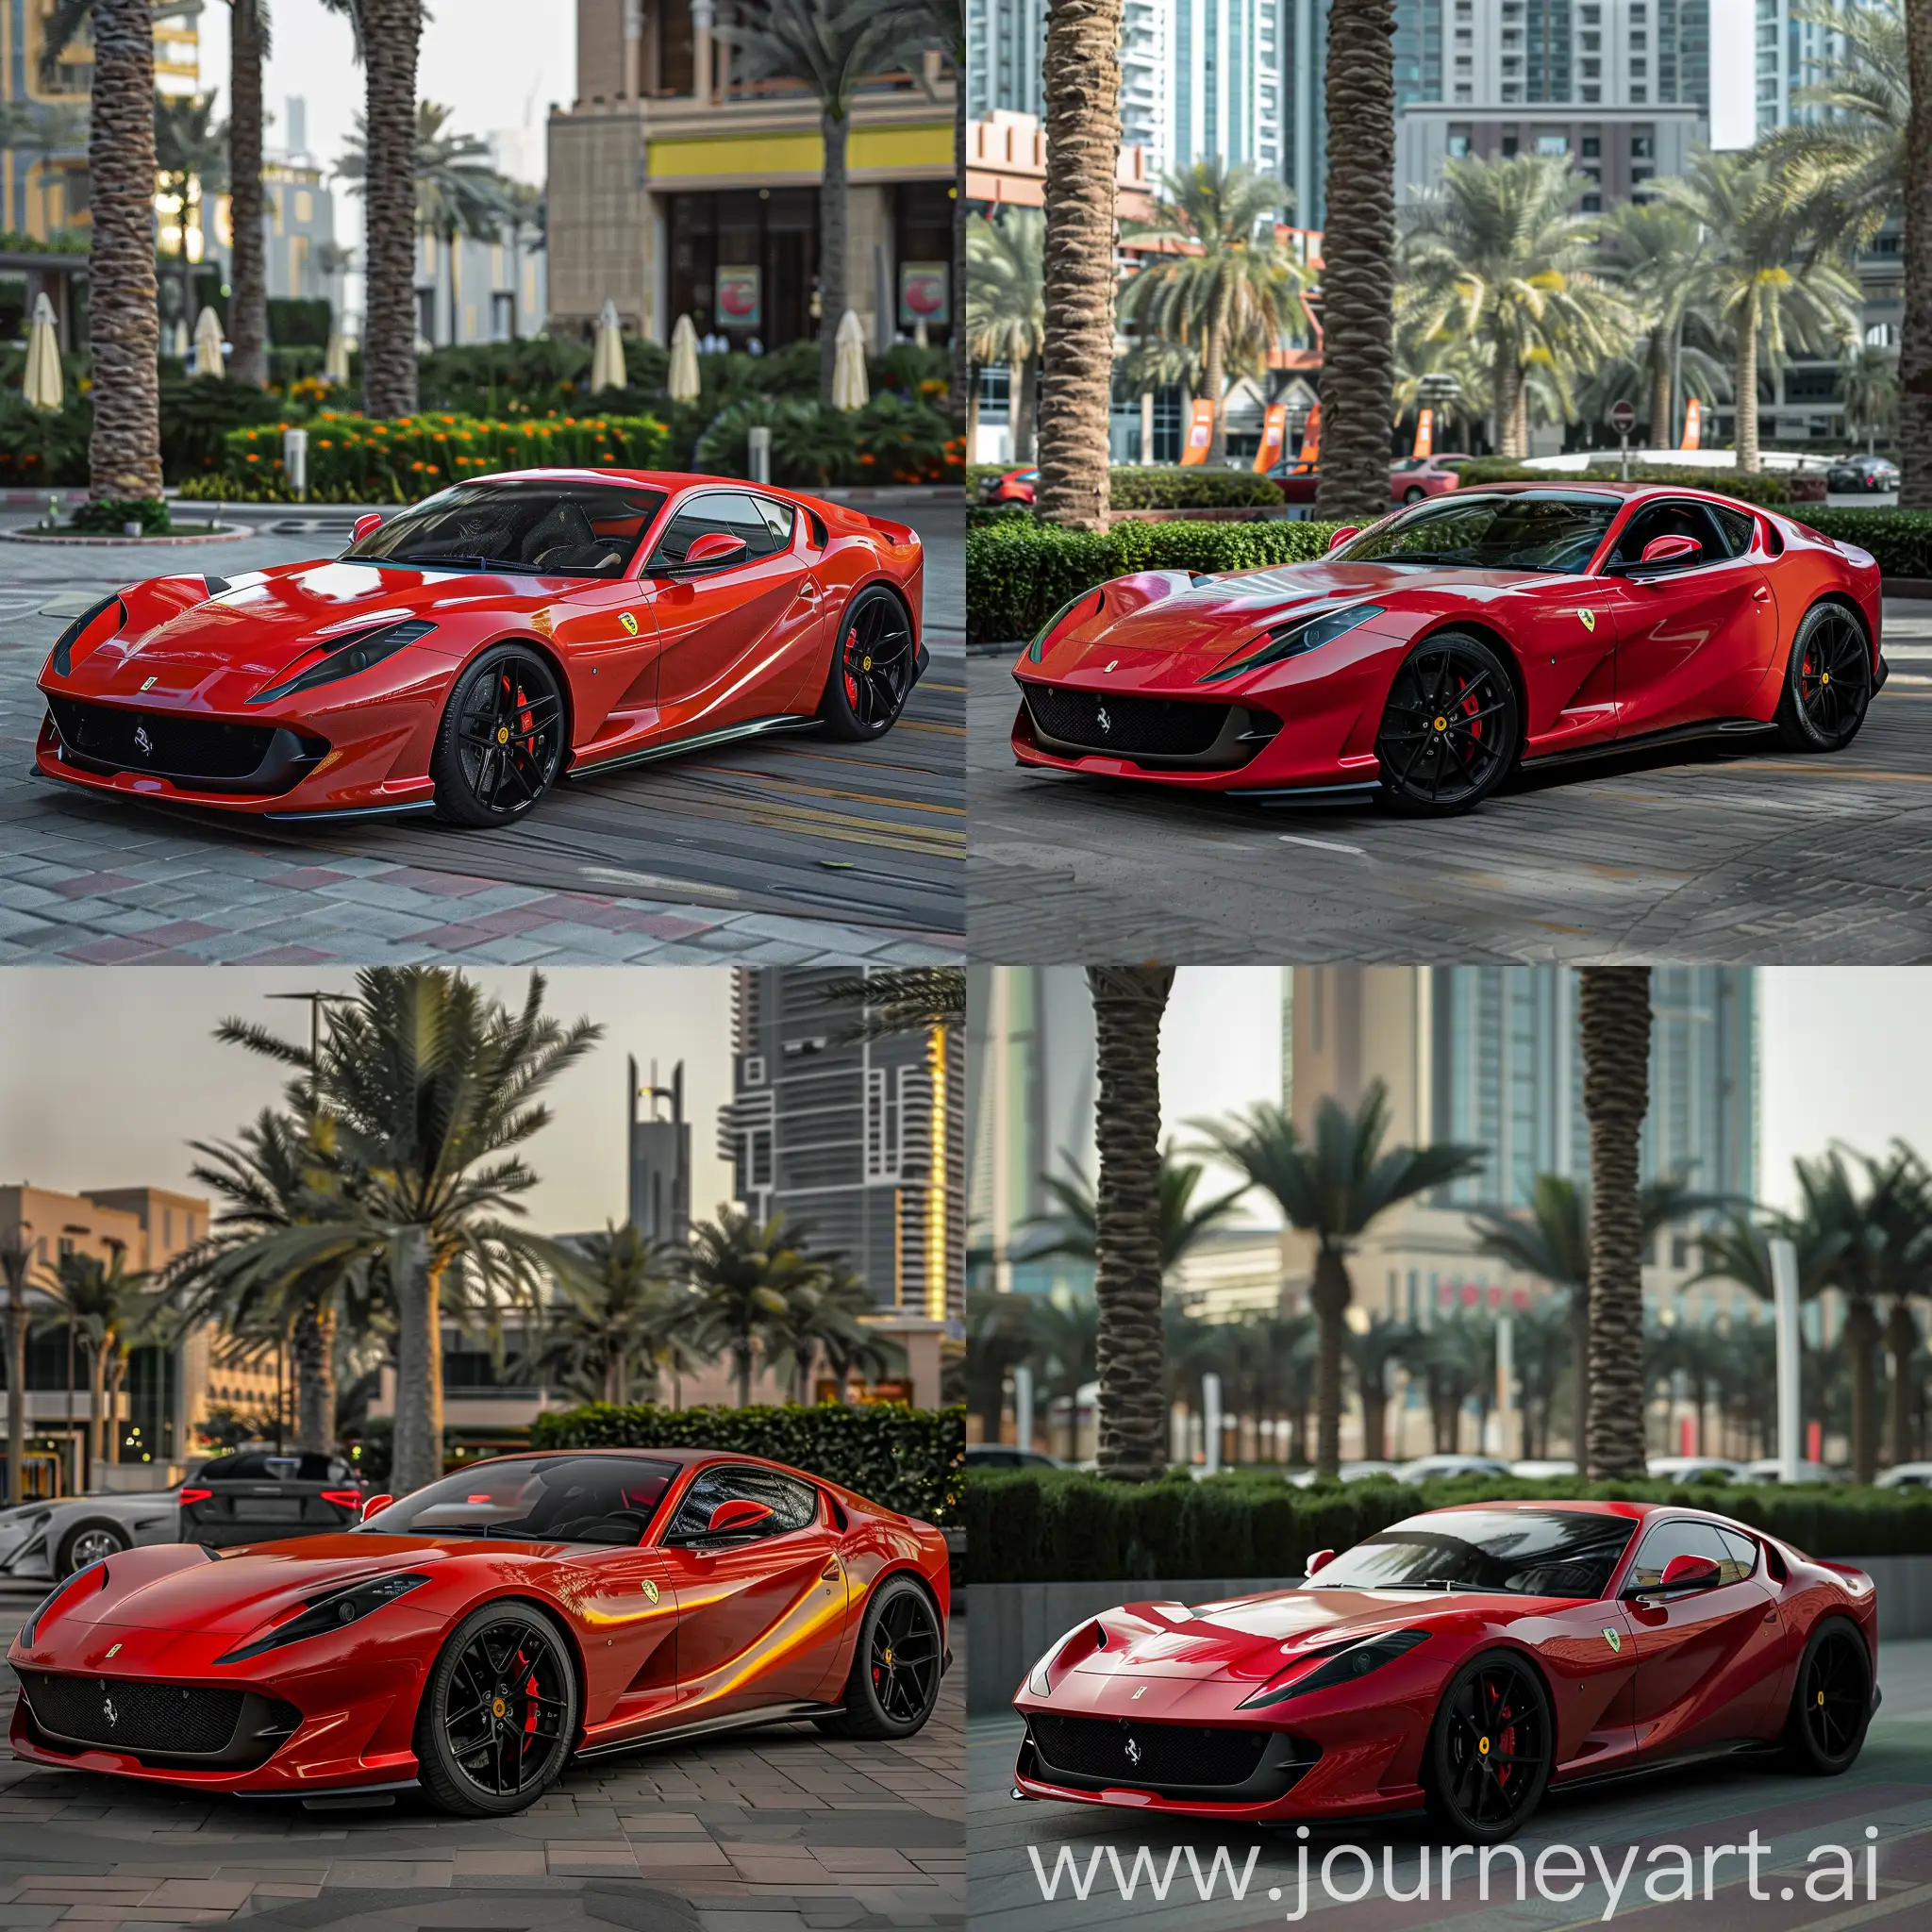 Vibrant-Red-Ferrari-812-Spotted-in-Dubai-Cityscape